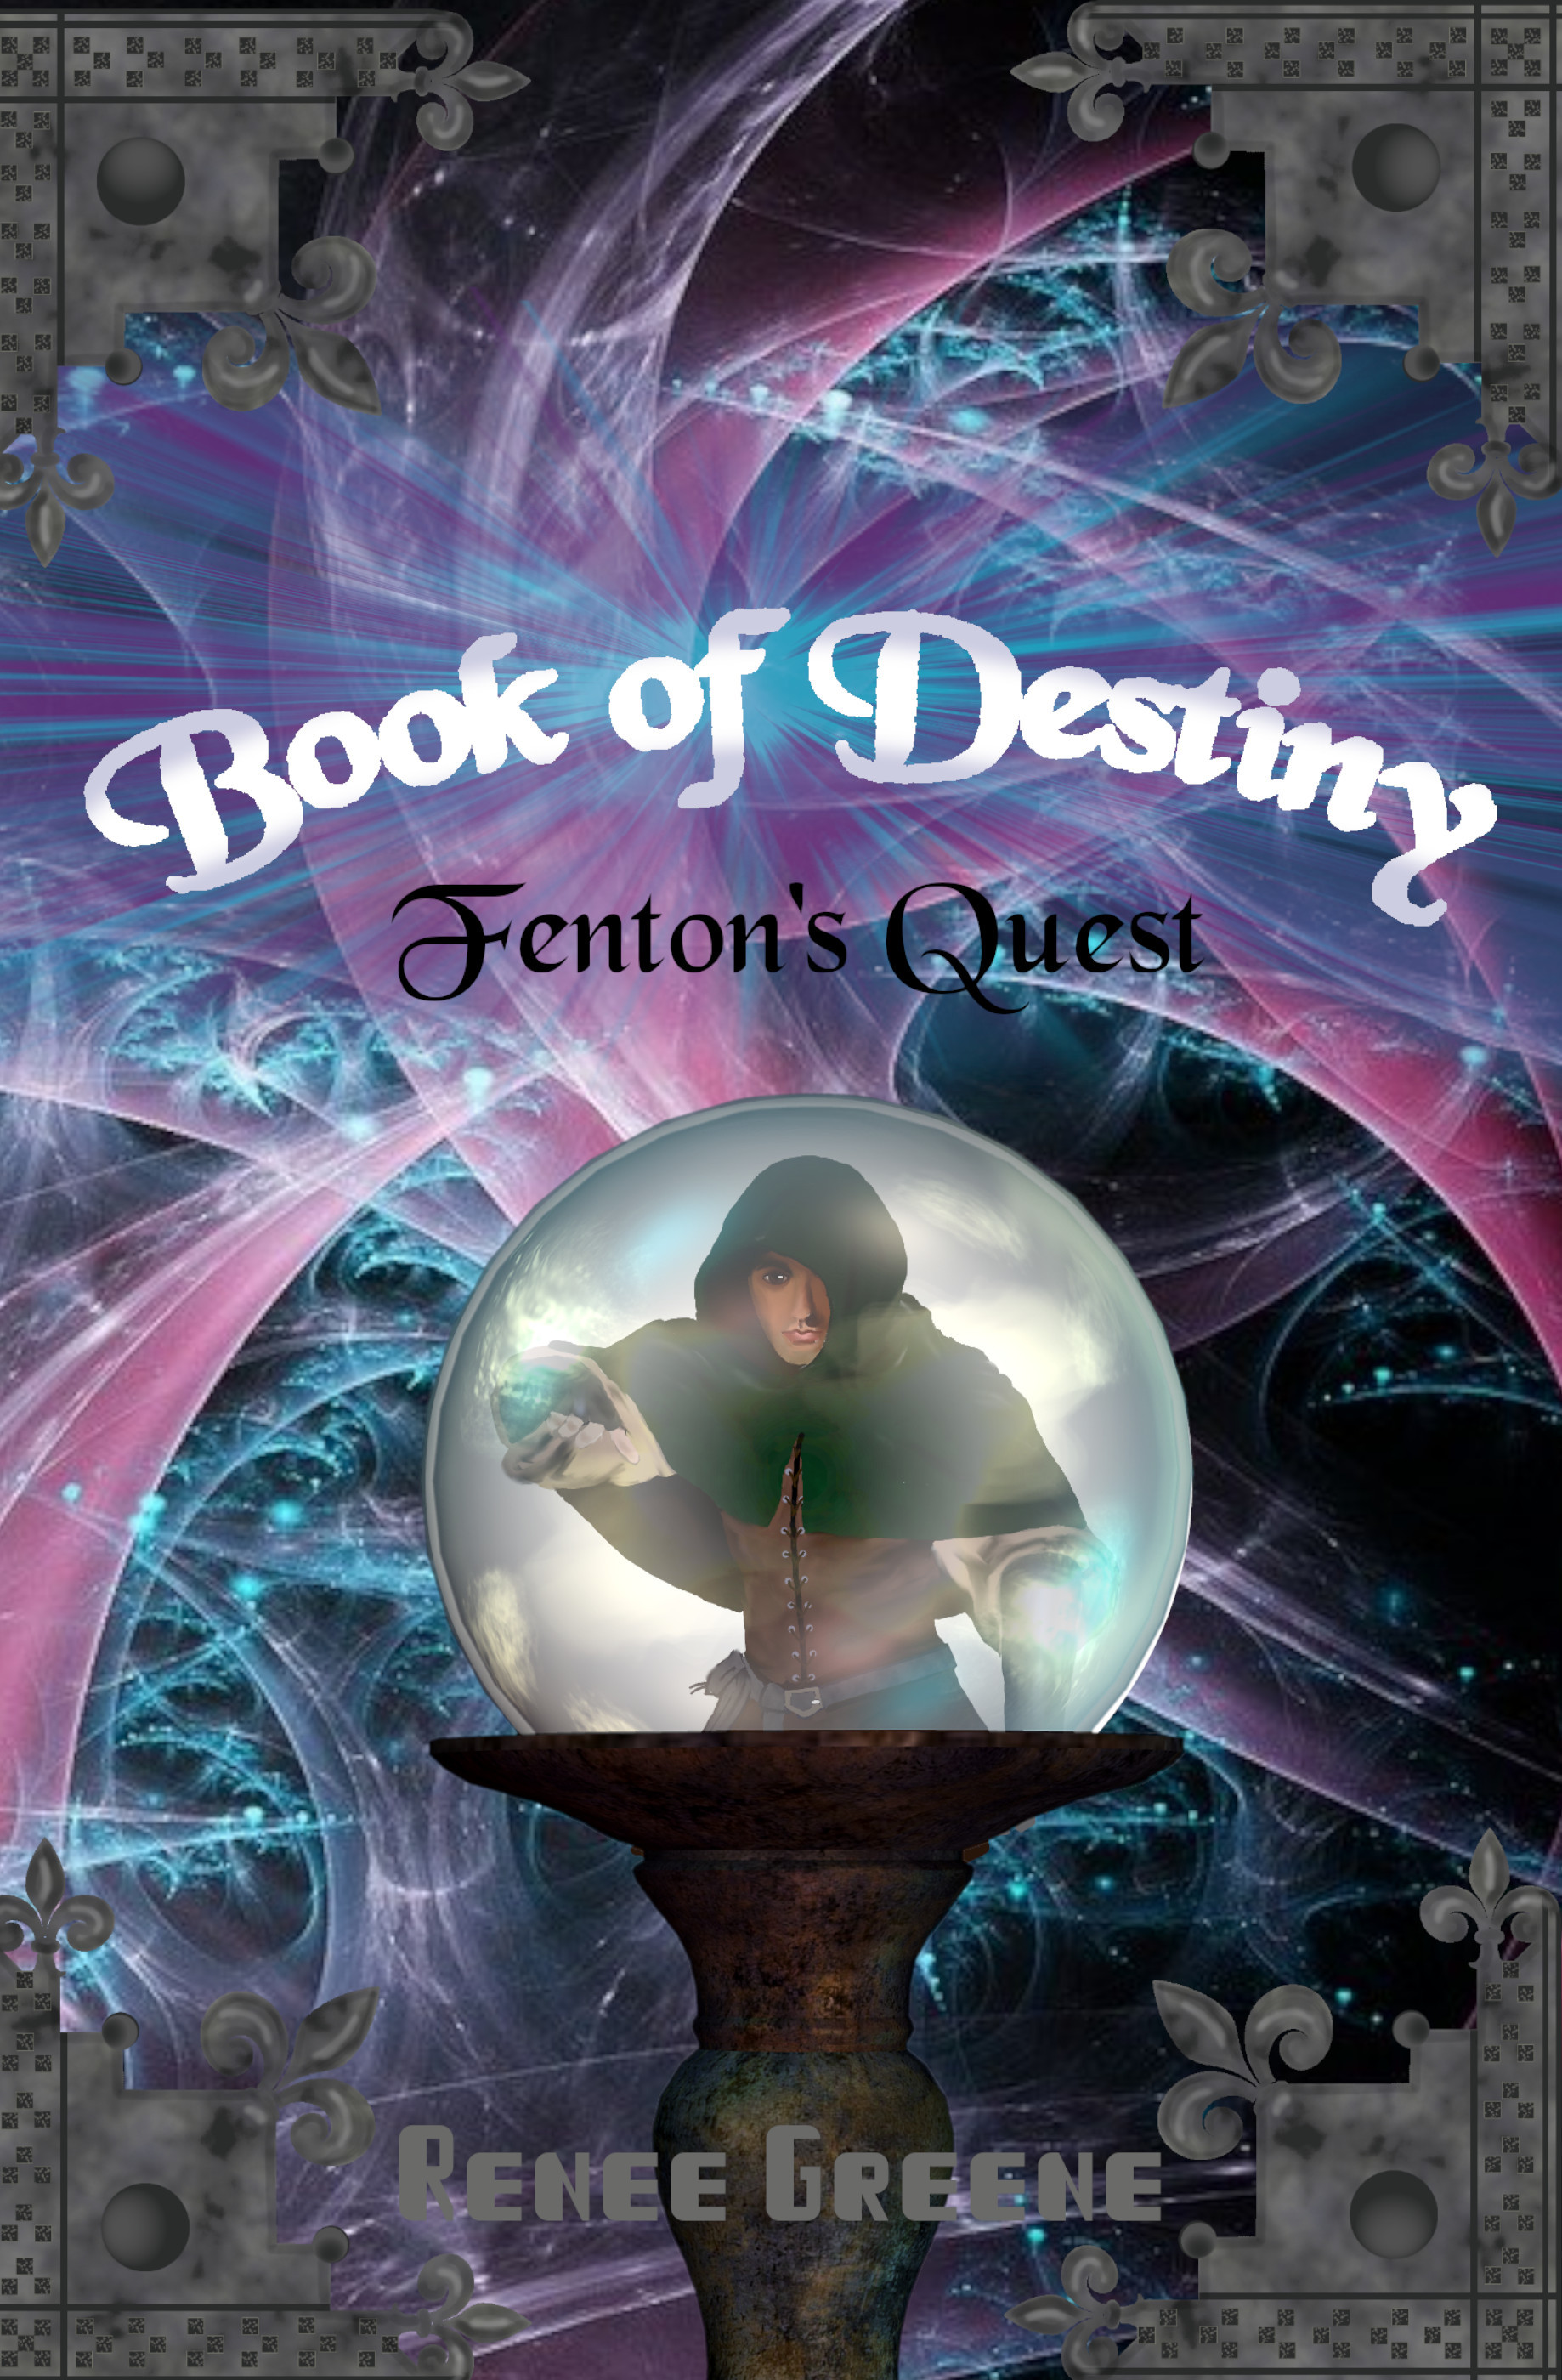 Book of Destiny